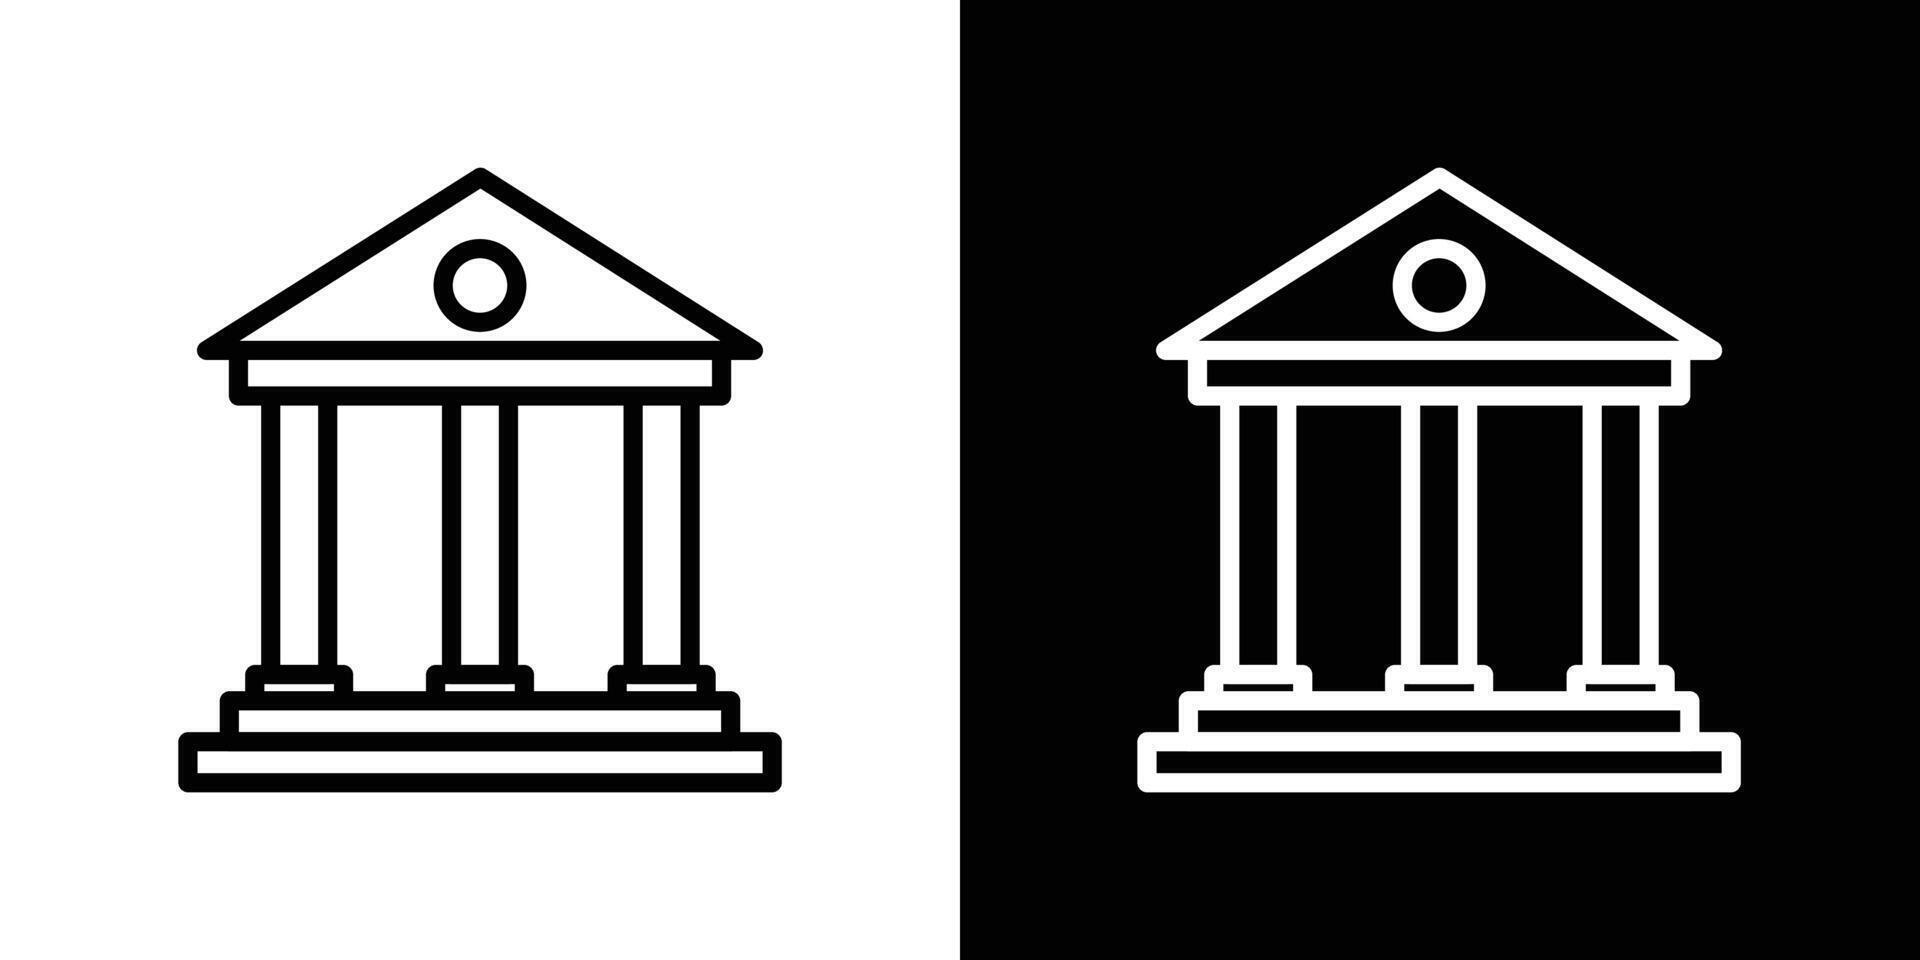 Bank building icon vector